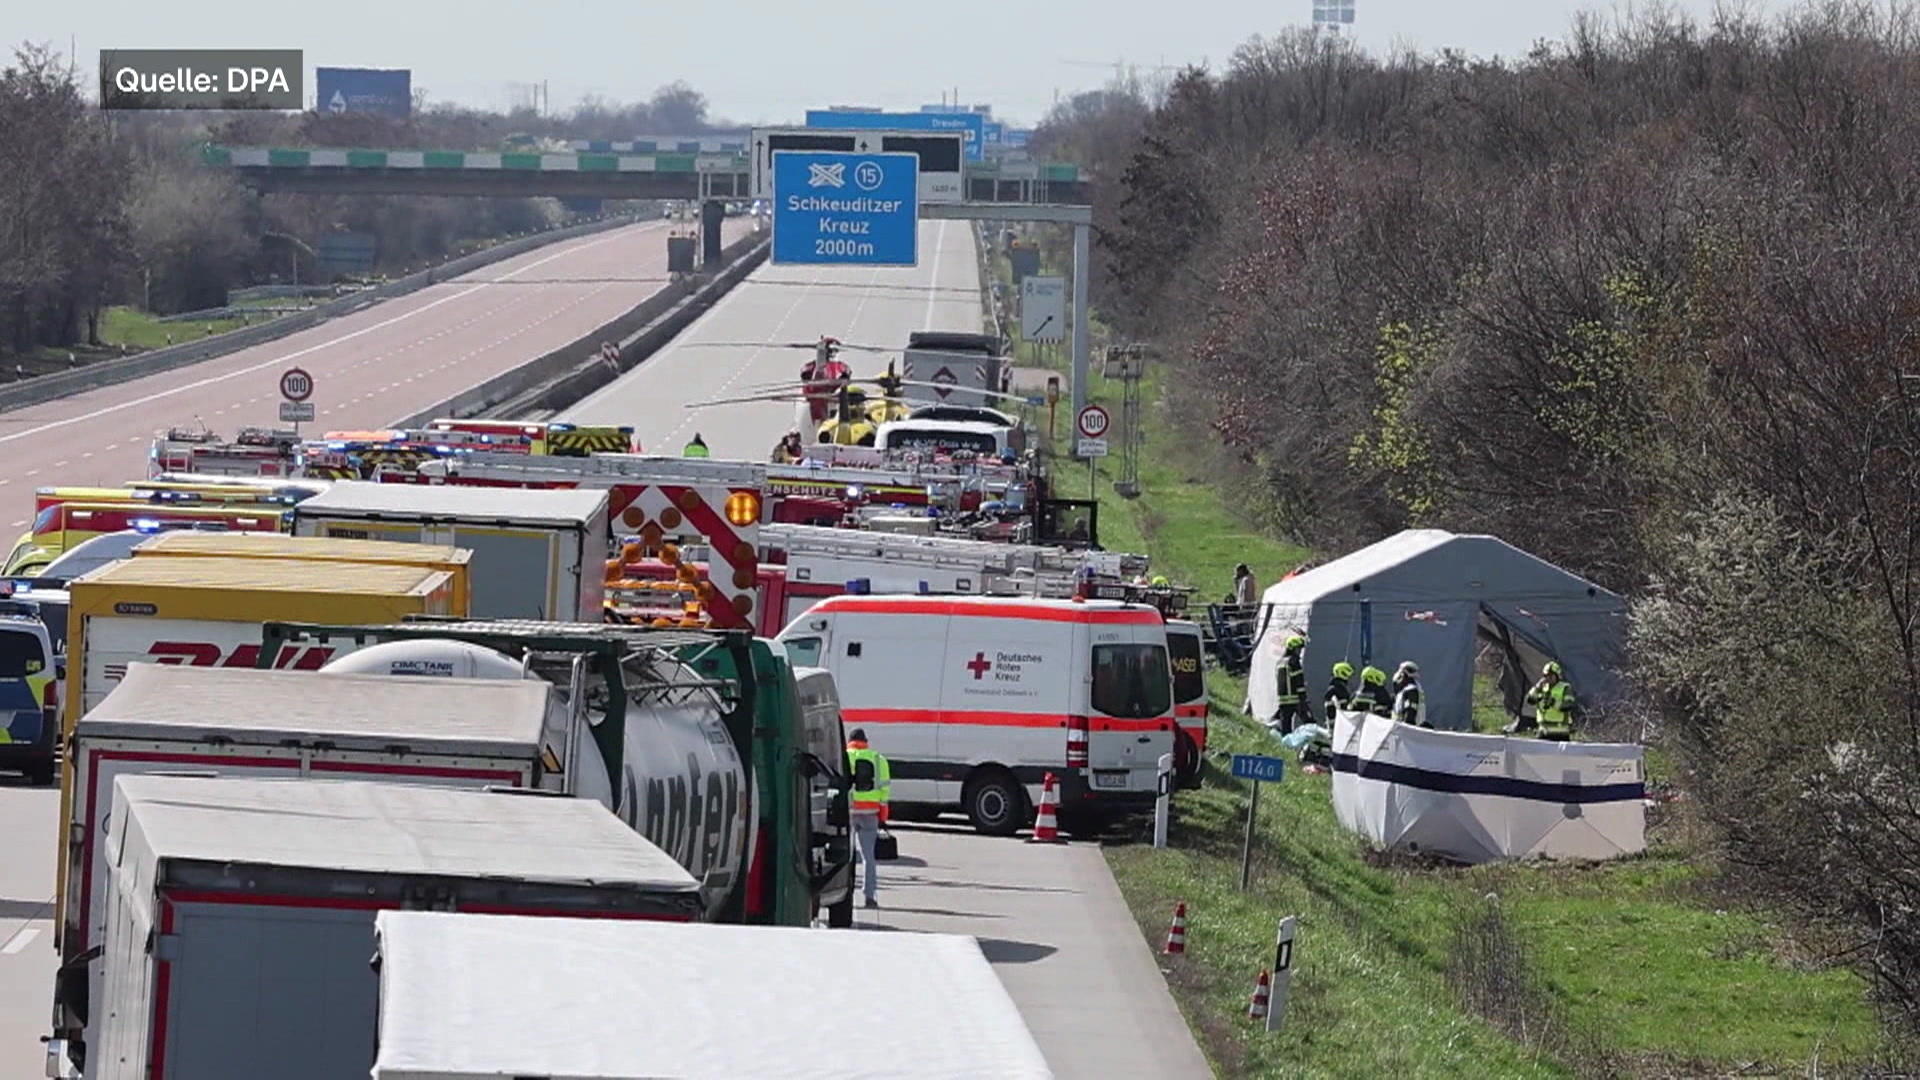 Un grave incidente del Flex bus in autostrada, almeno cinque morti!